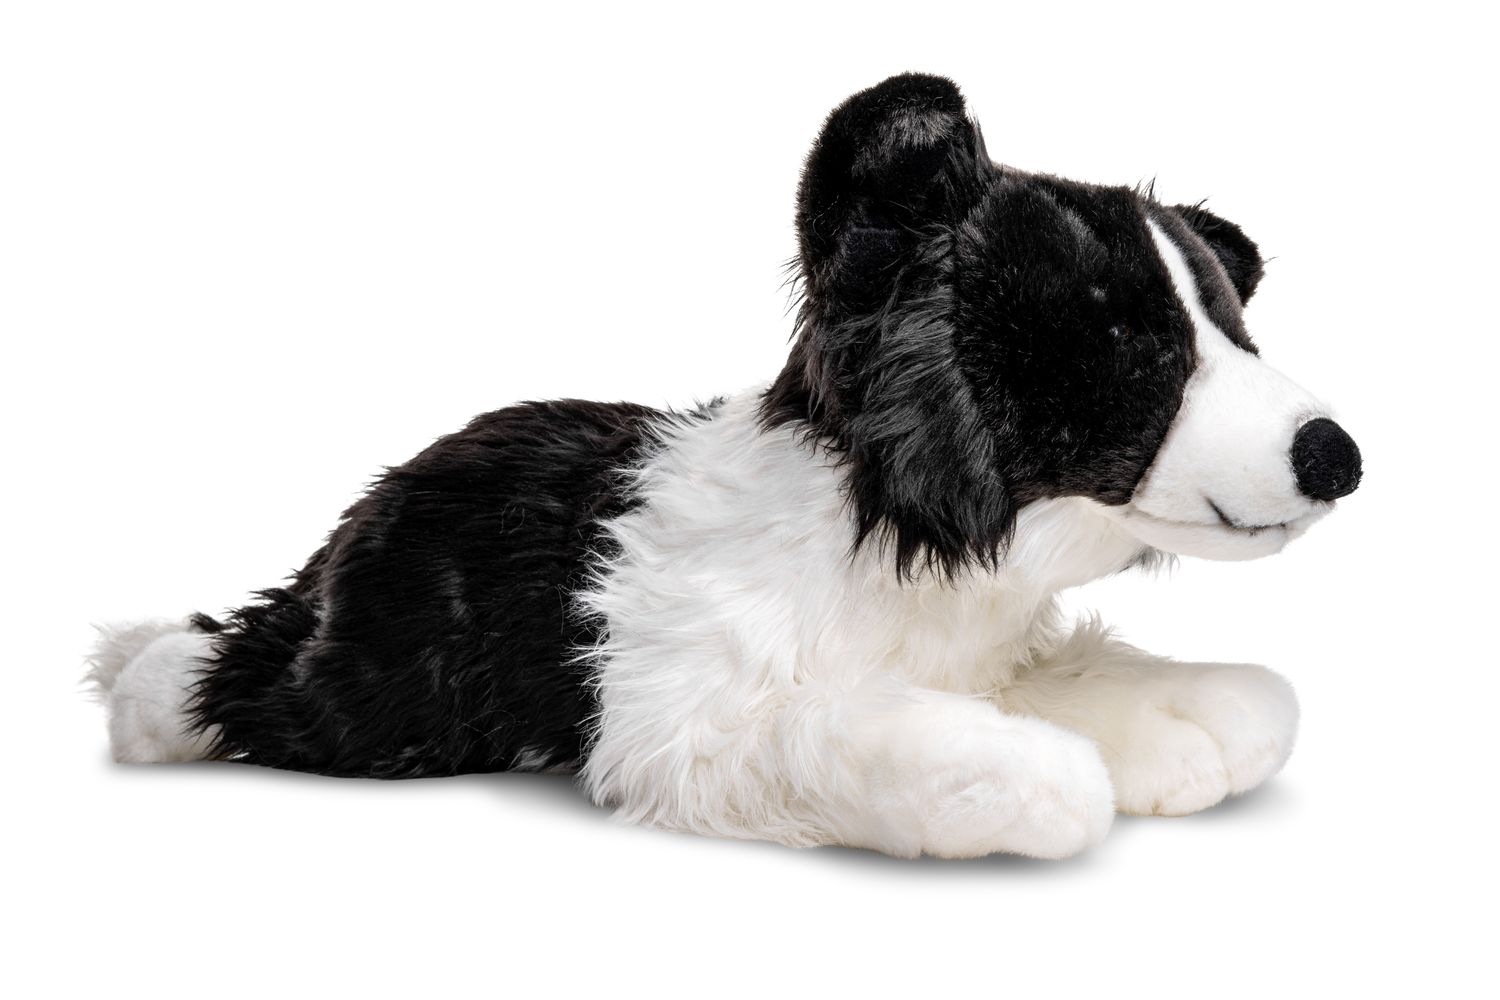 Uni-Toys Neuware Hund weißer Schäferhund mit Leine ca 23cm groß 